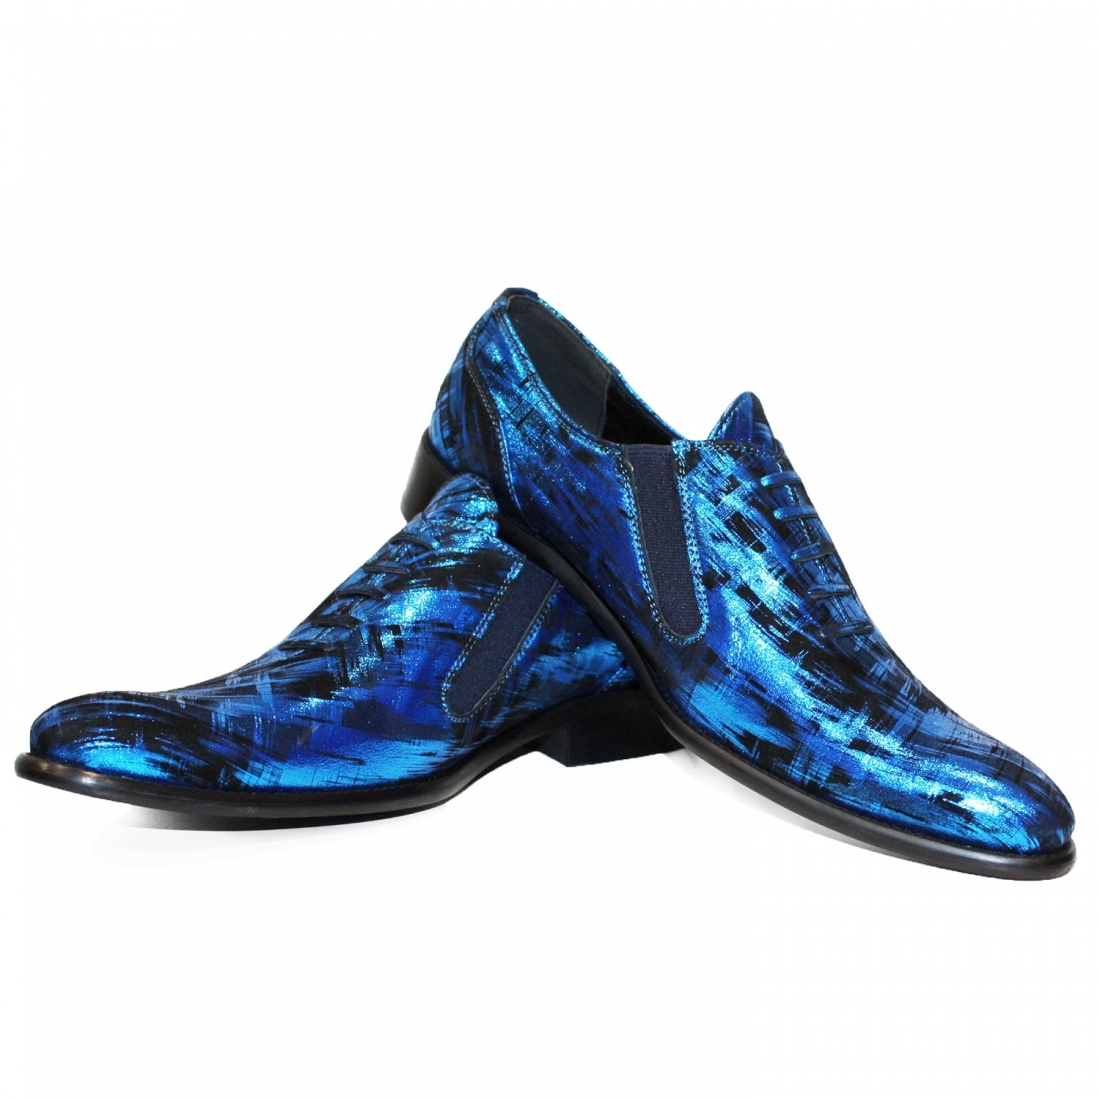 Modello Cremoto - Slipper - Handmade Colorful Italian Leather Shoes